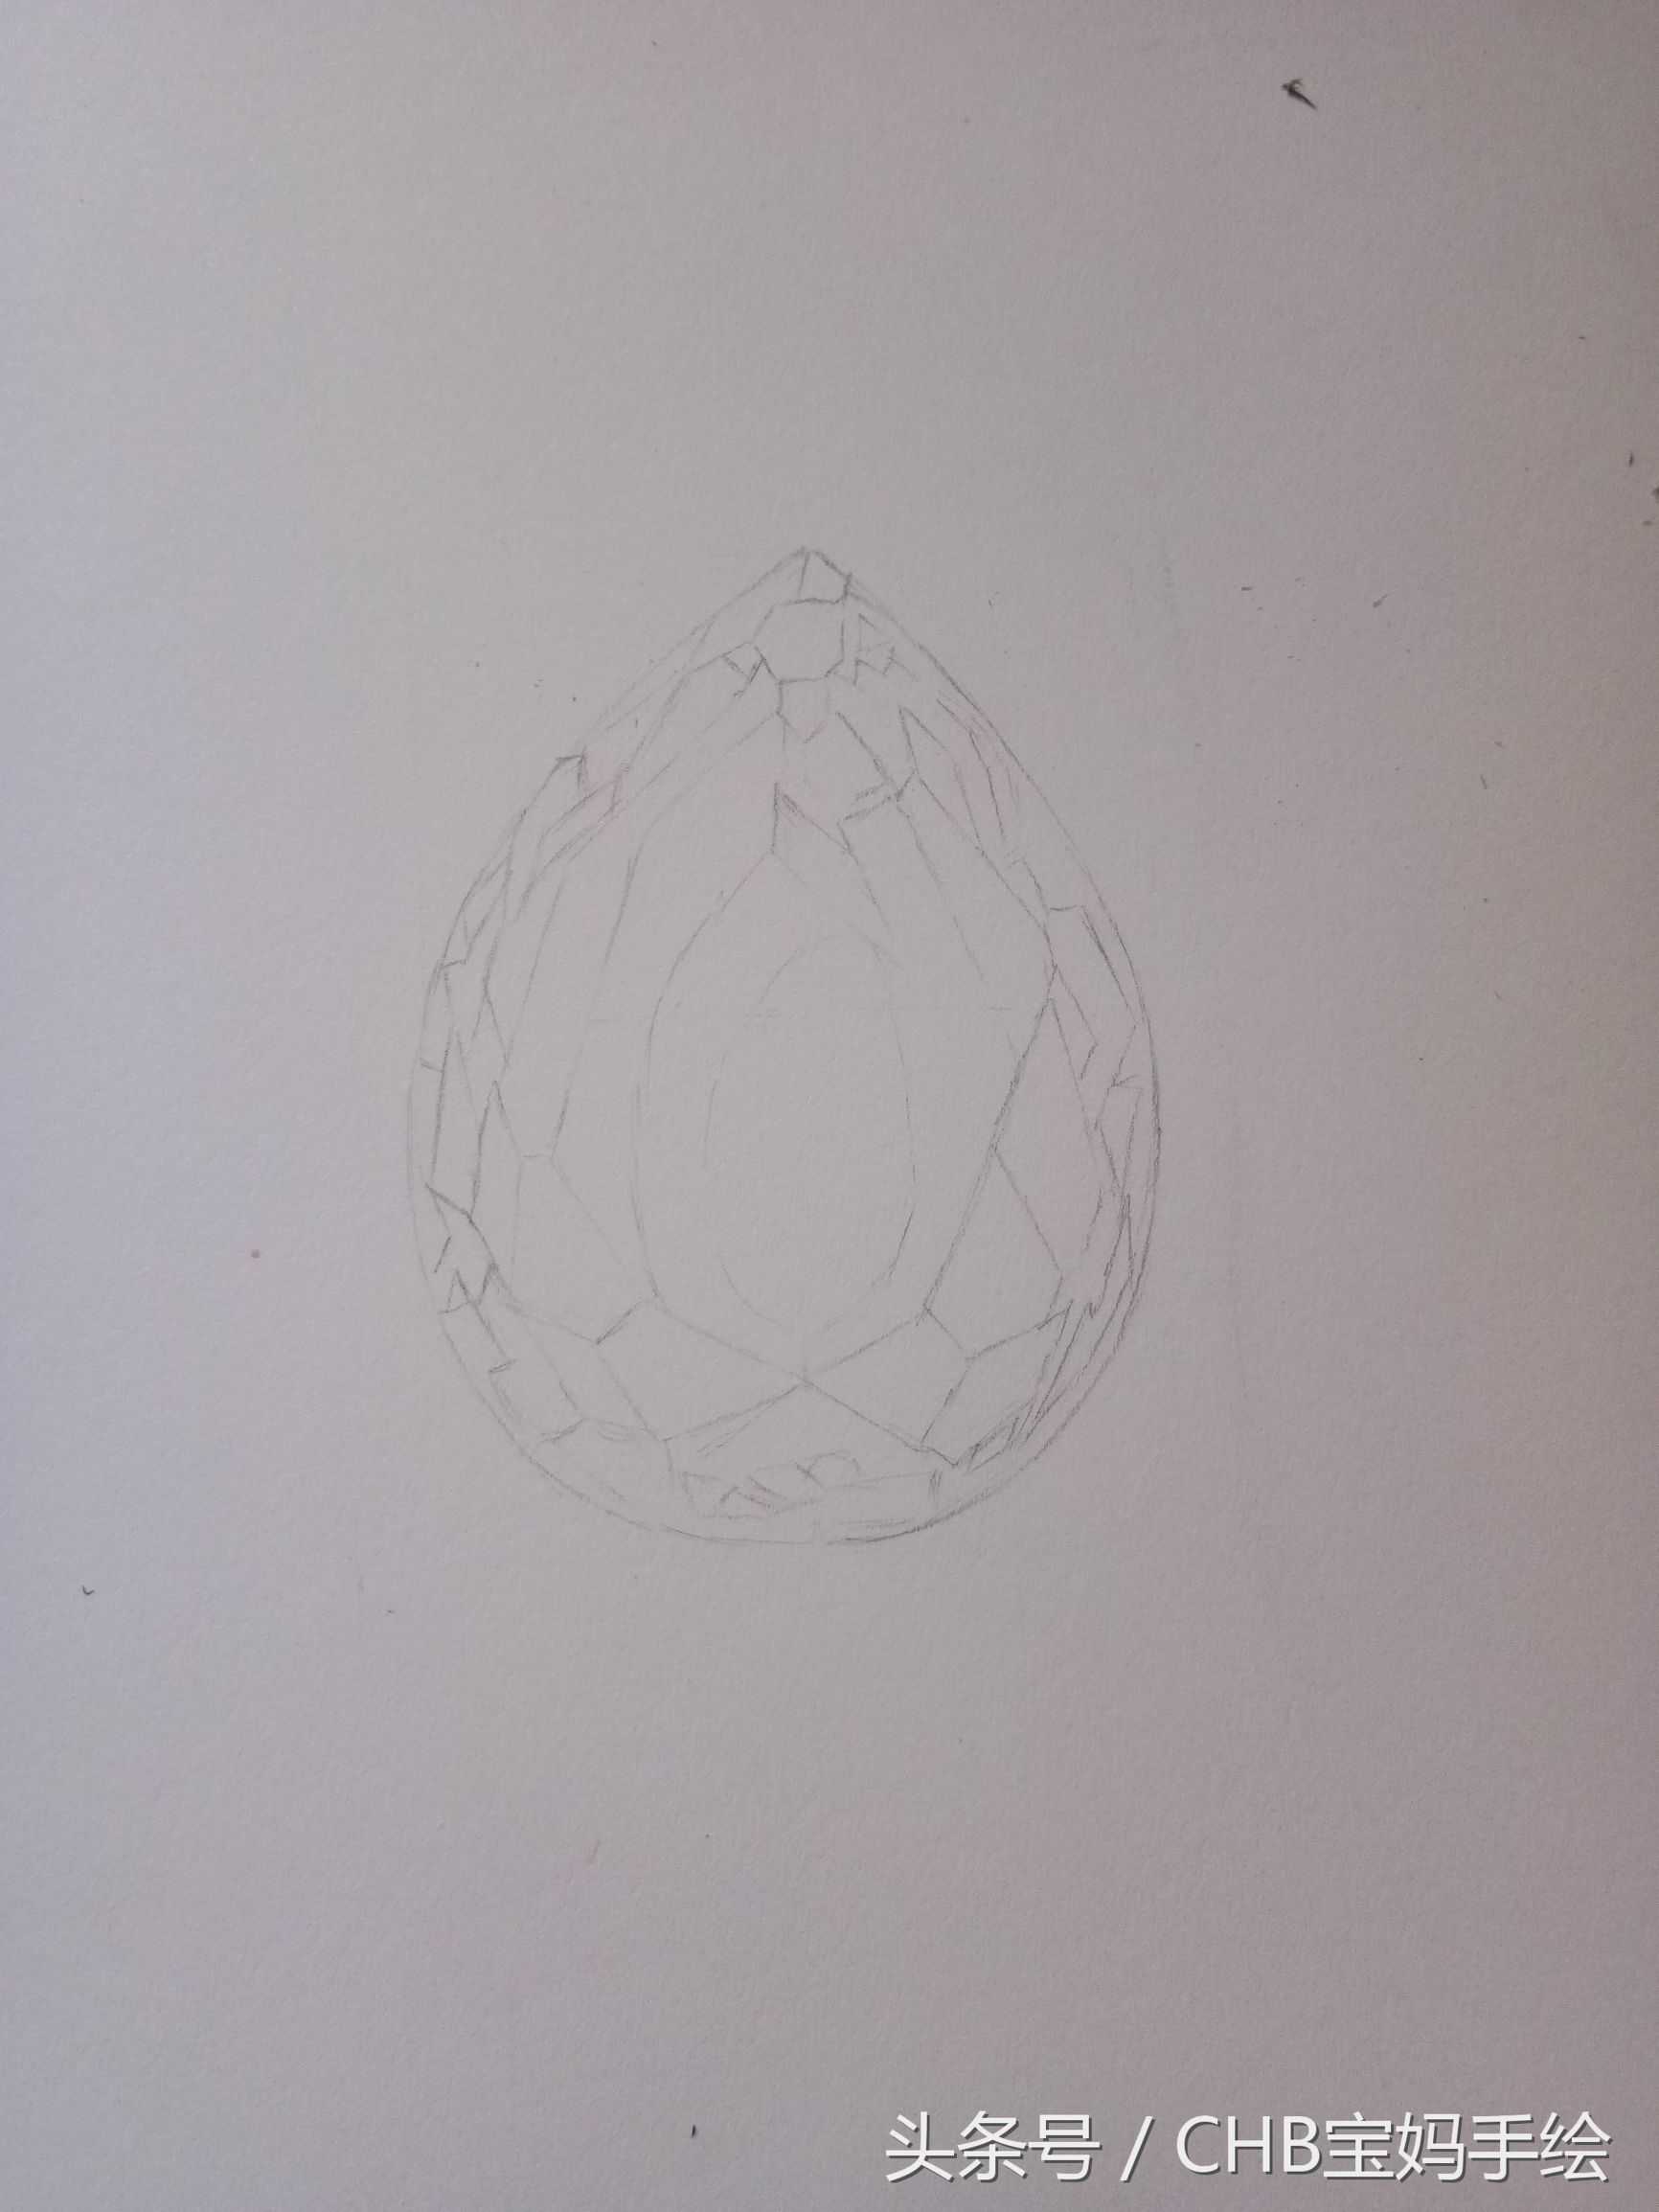 彩铅钻石手绘画法步骤教程（妈妈为孩子学一颗钻石彩铅手绘过程）